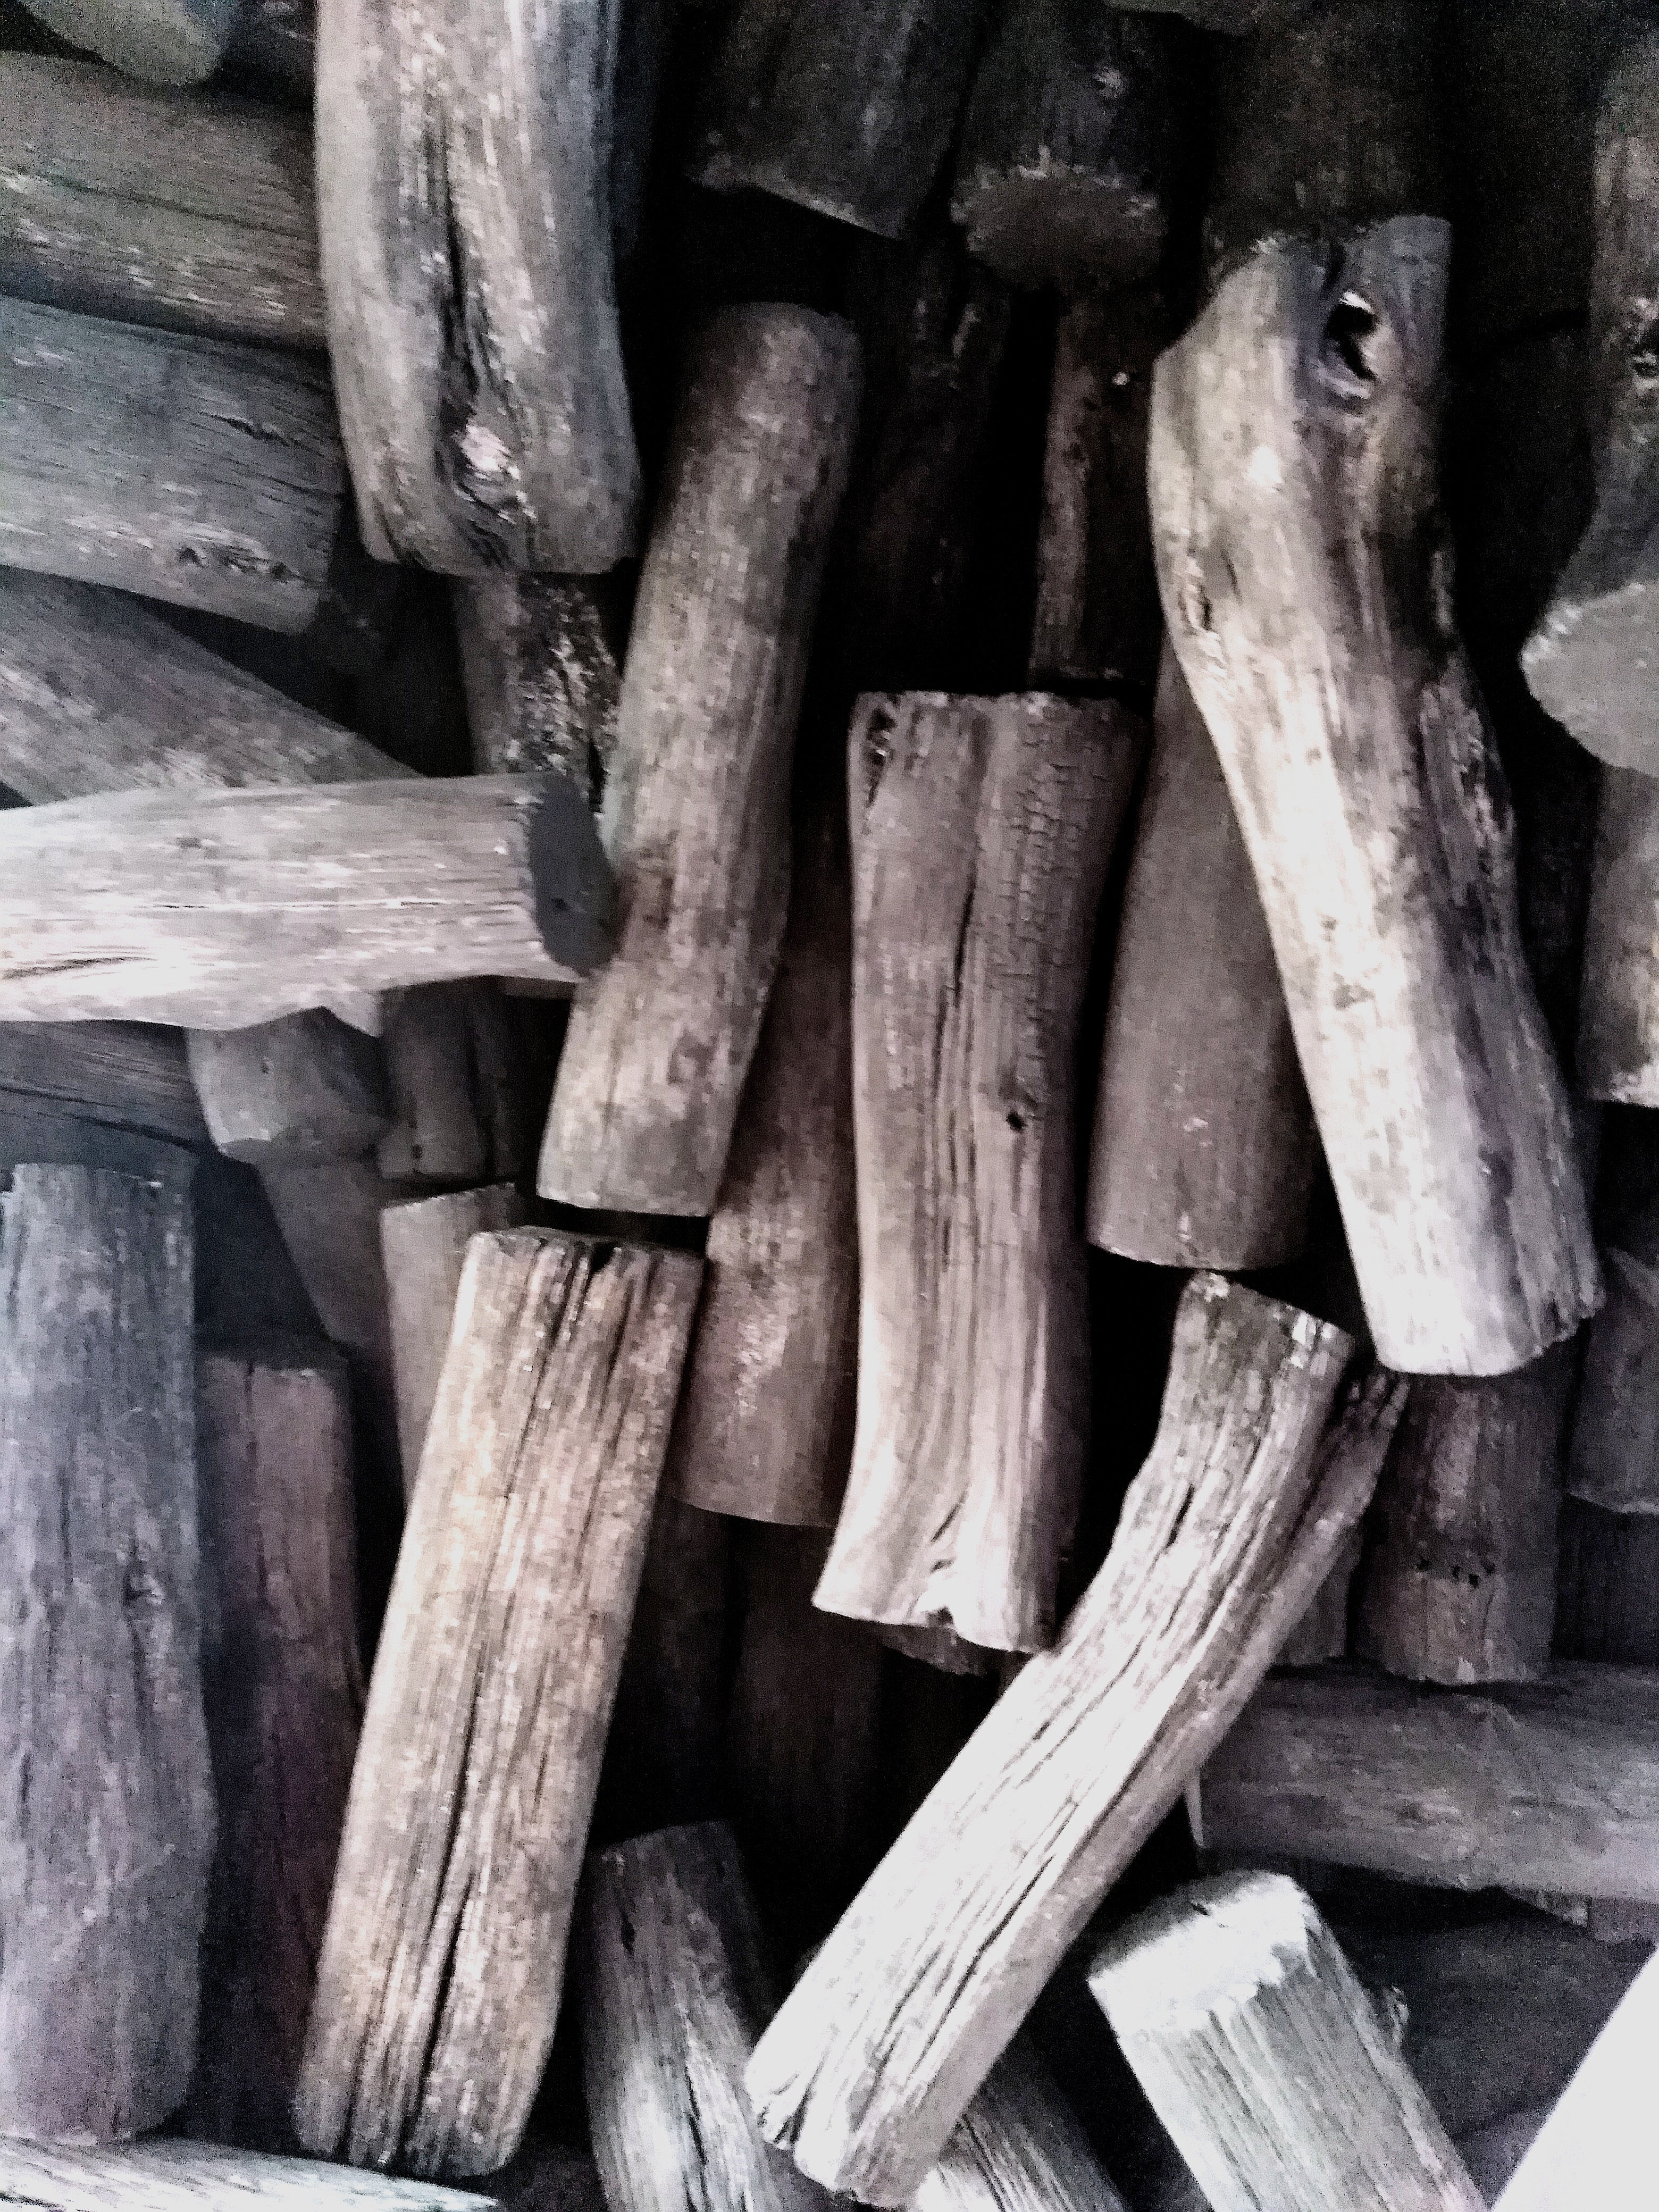 Charbon de bois Binchotan importé du Japon - 15 kg